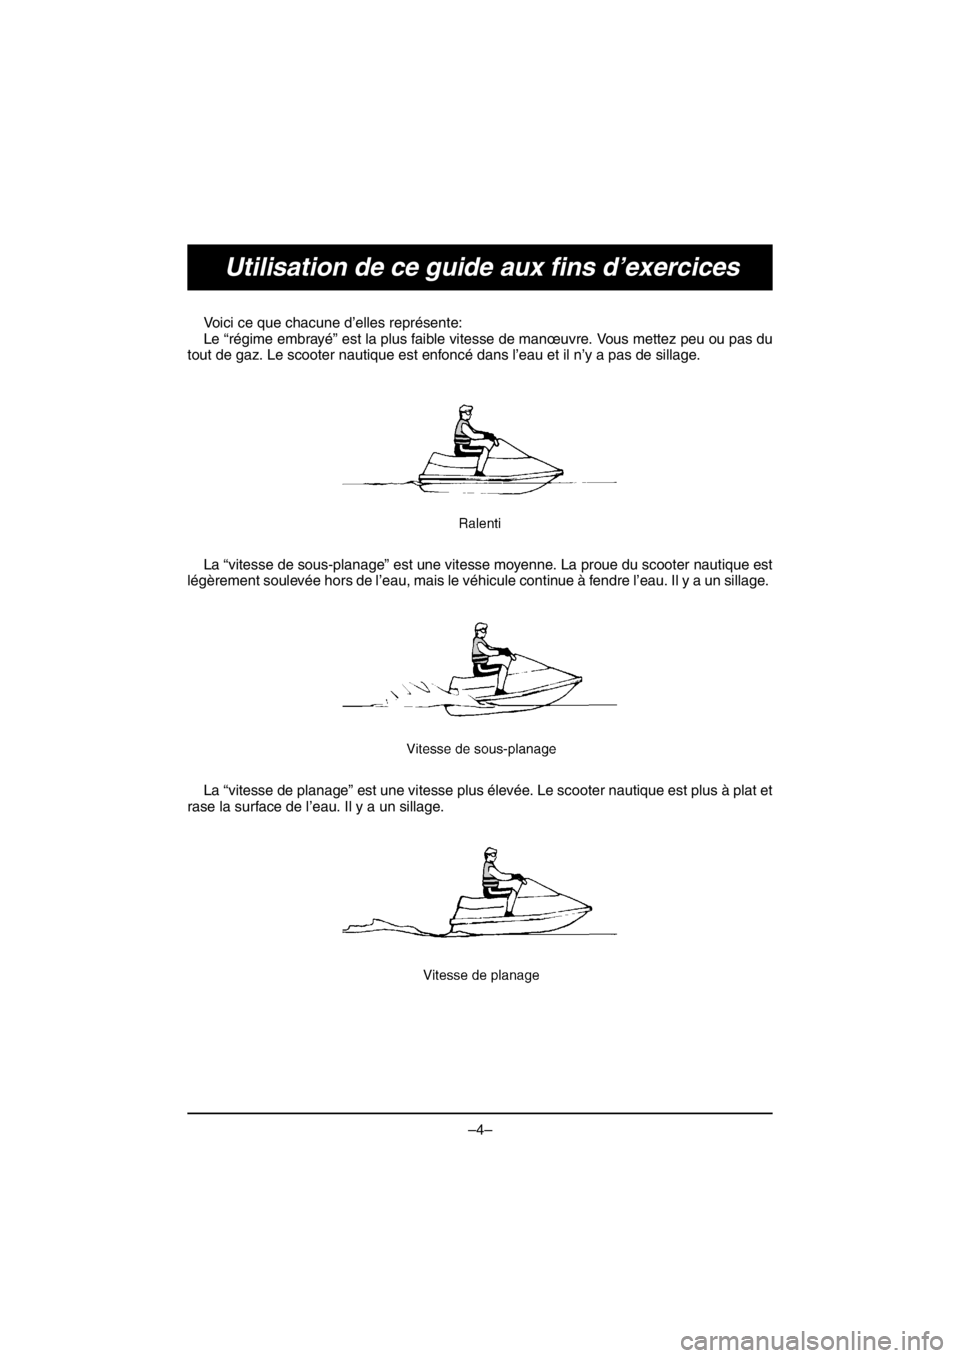 YAMAHA V1 2016  Owners Manual –4–
Utilisation de ce guide aux fins d’exercices
Voici ce que chacune d’elles représente: 
Le “régime embrayé” est la plus faible vitesse de manœuvre. Vous mettez peu ou pas du
tout de